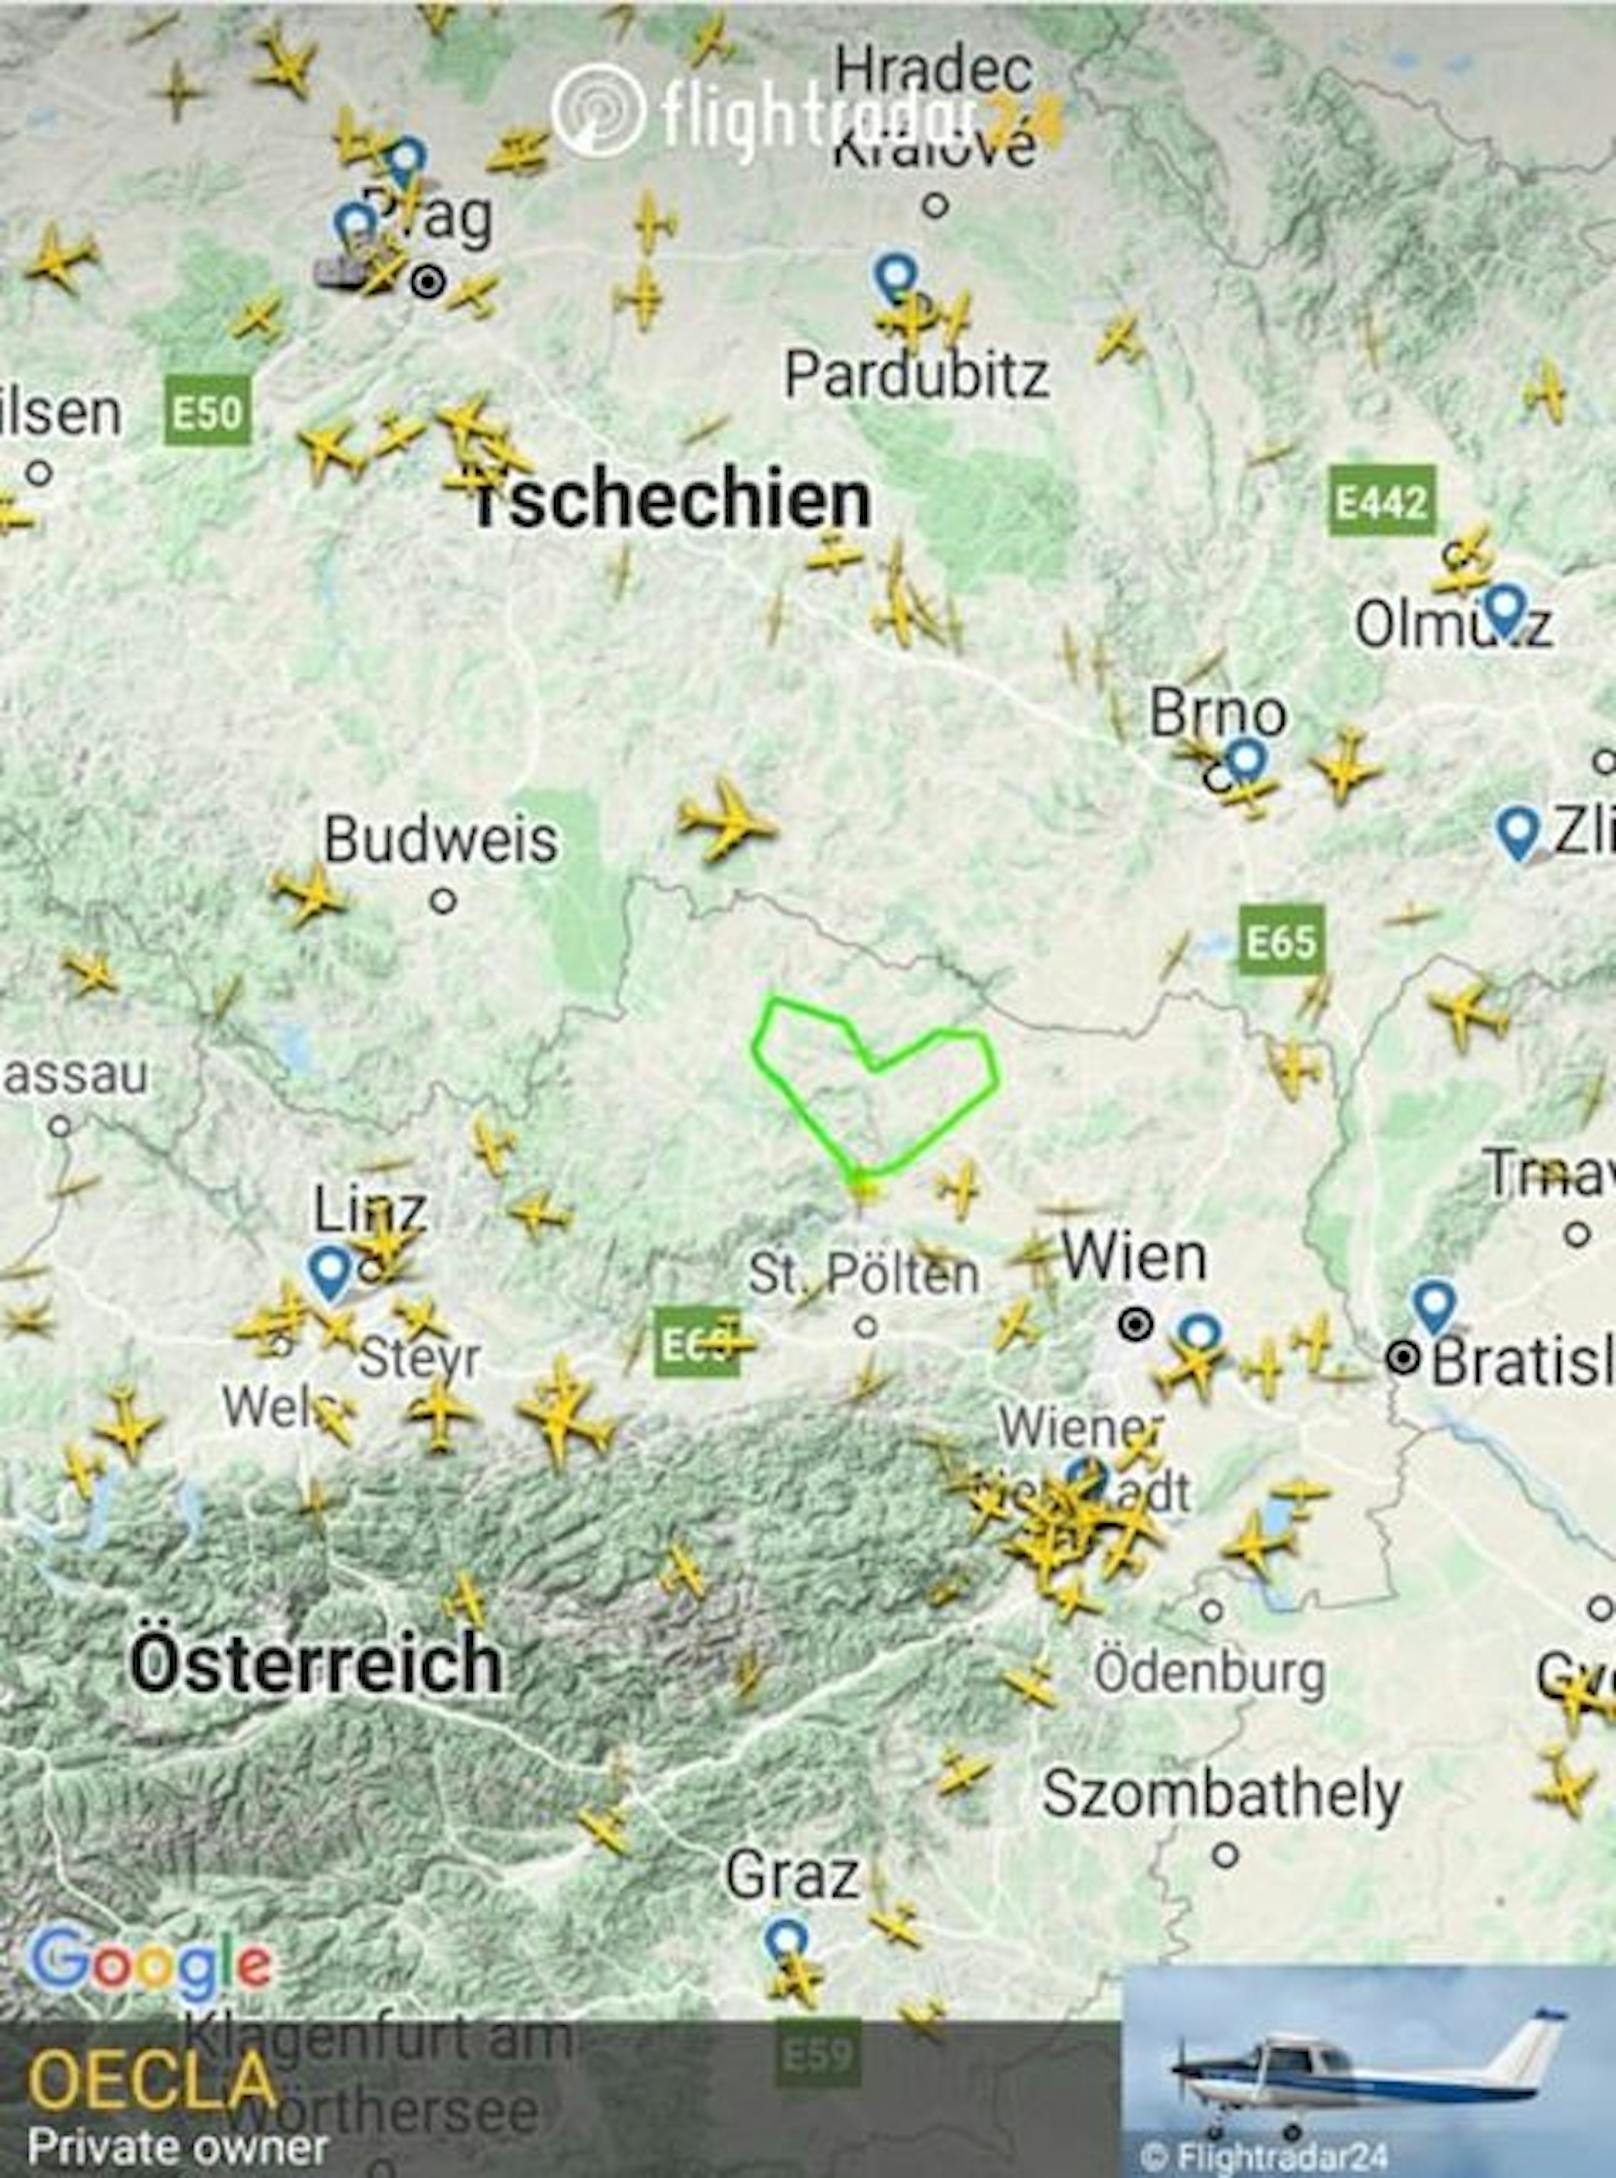 Daniel (26) schenkt mit seinem Flug ganz Österreich ein Herz.